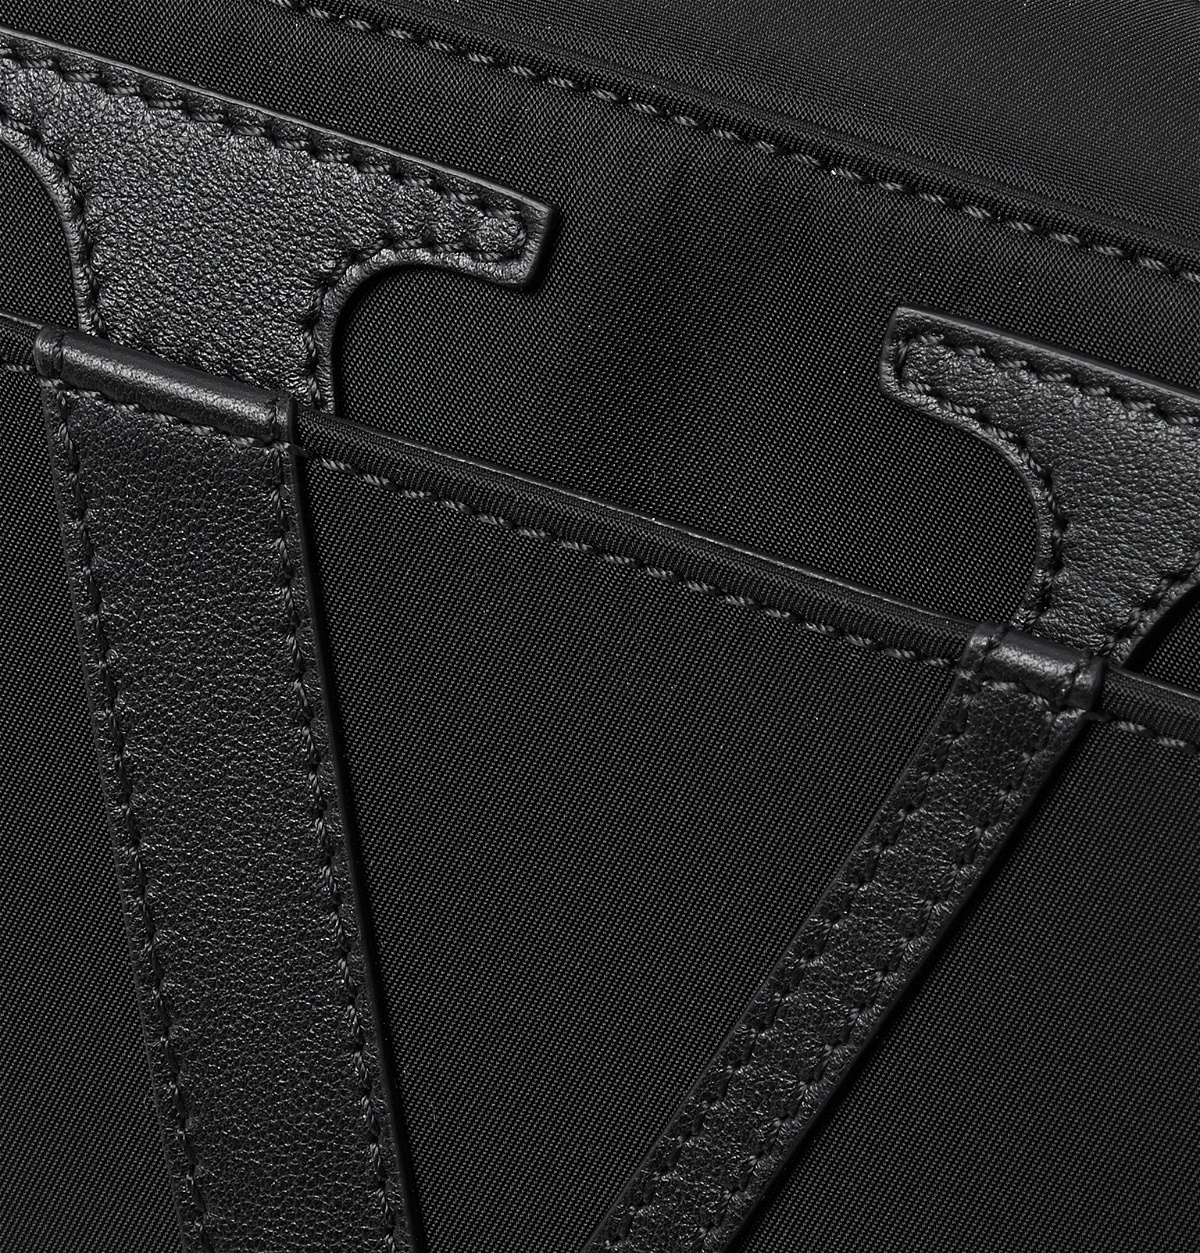 The (Nylon) Designer Belt Bag Battle - PurseBlog